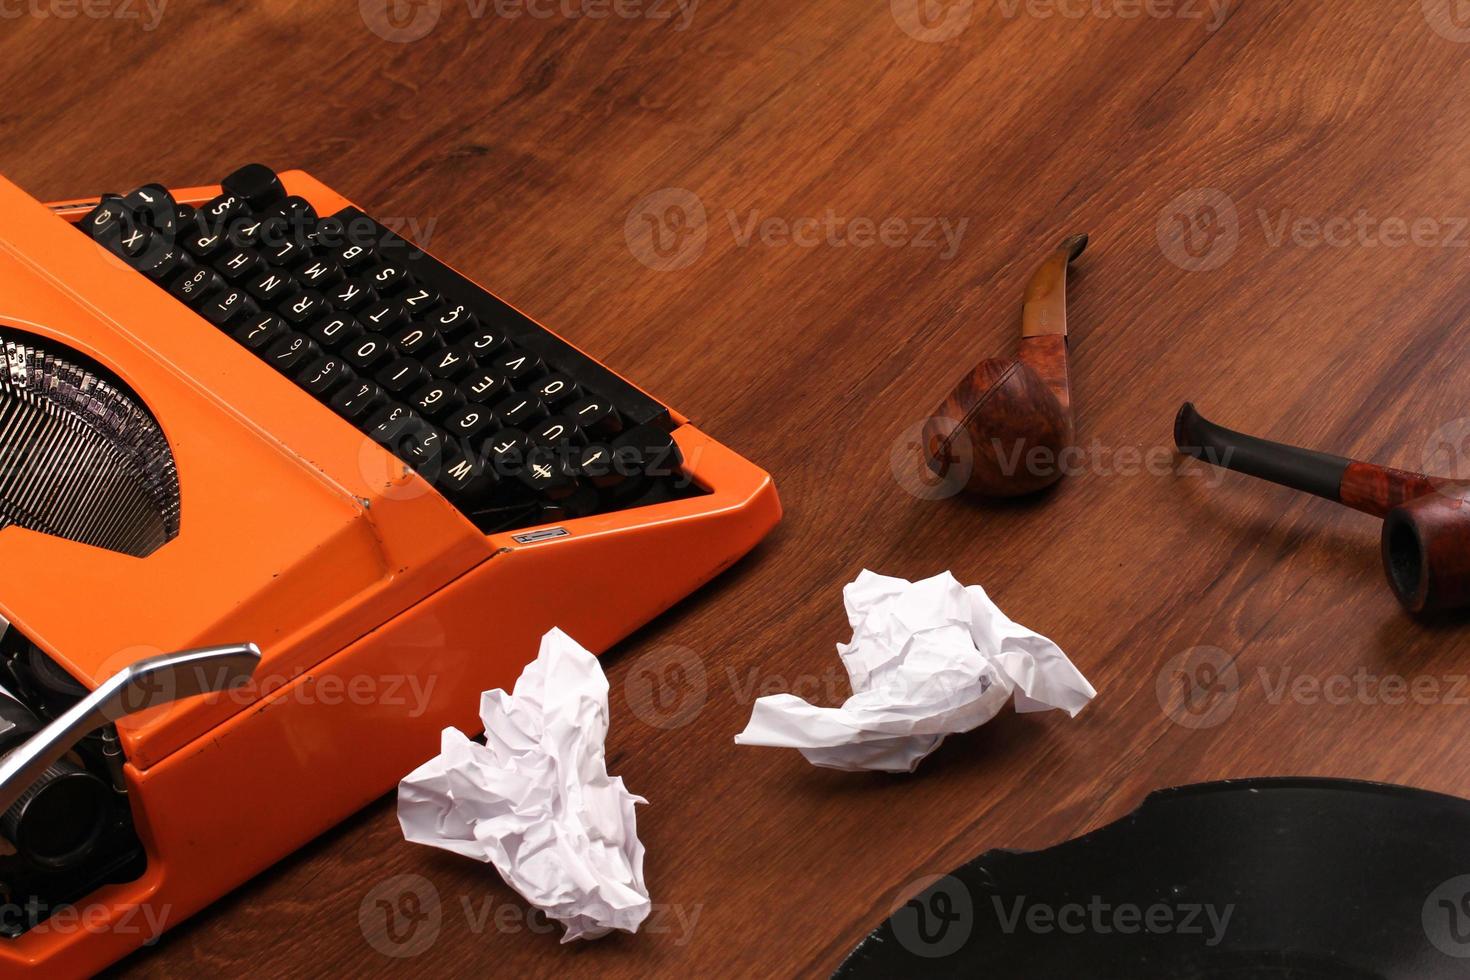 la máquina de escribir vintage naranja en la madera foto